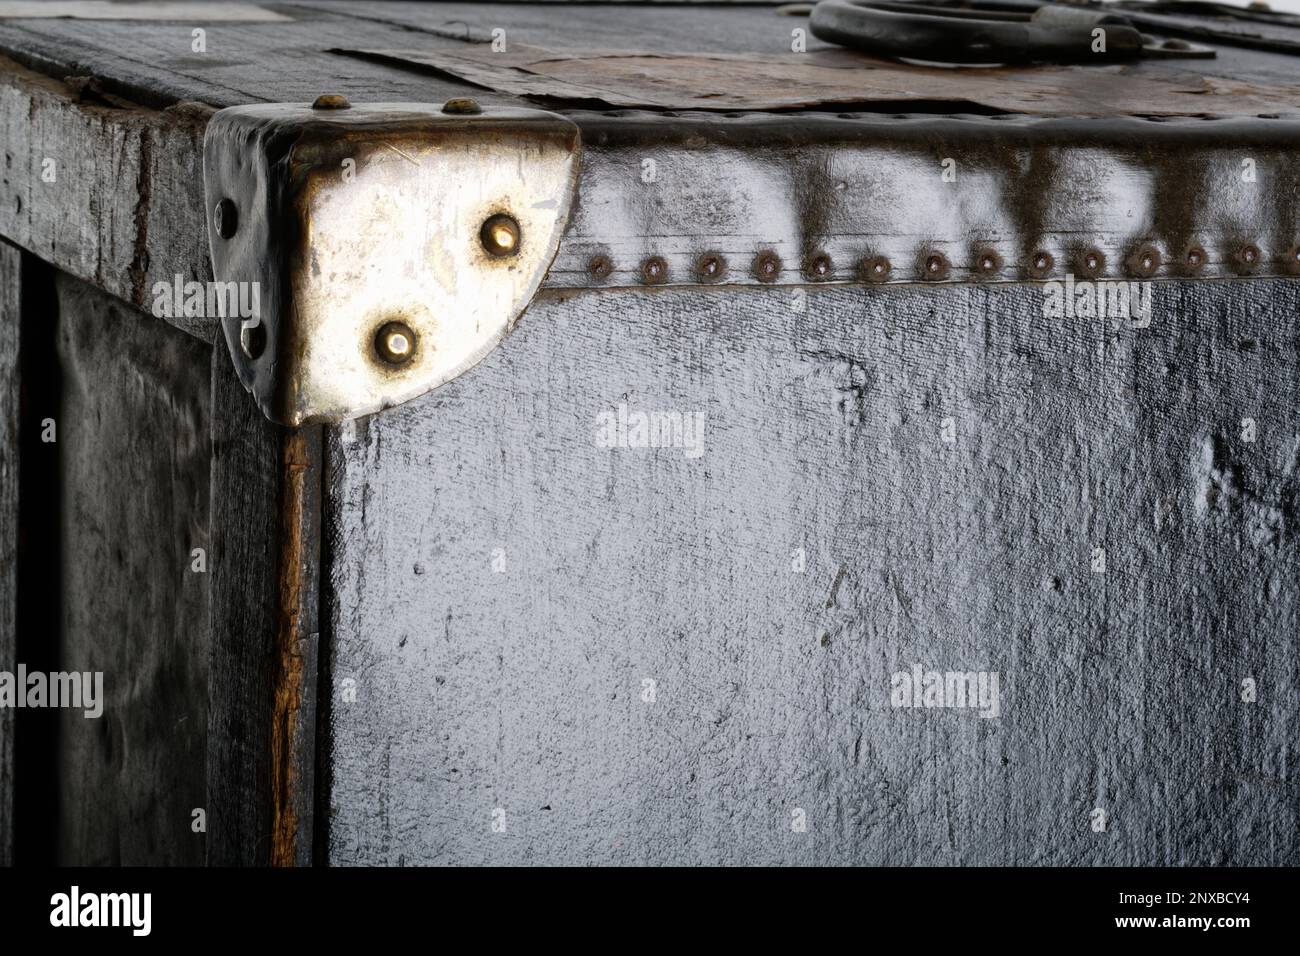 Gros plan sur des photos d'un coffre en bois à l'ancienne. Un coffre noir avec des coins renforcés en métal et des bords en cuir. Image d'arrière-plan. Banque D'Images